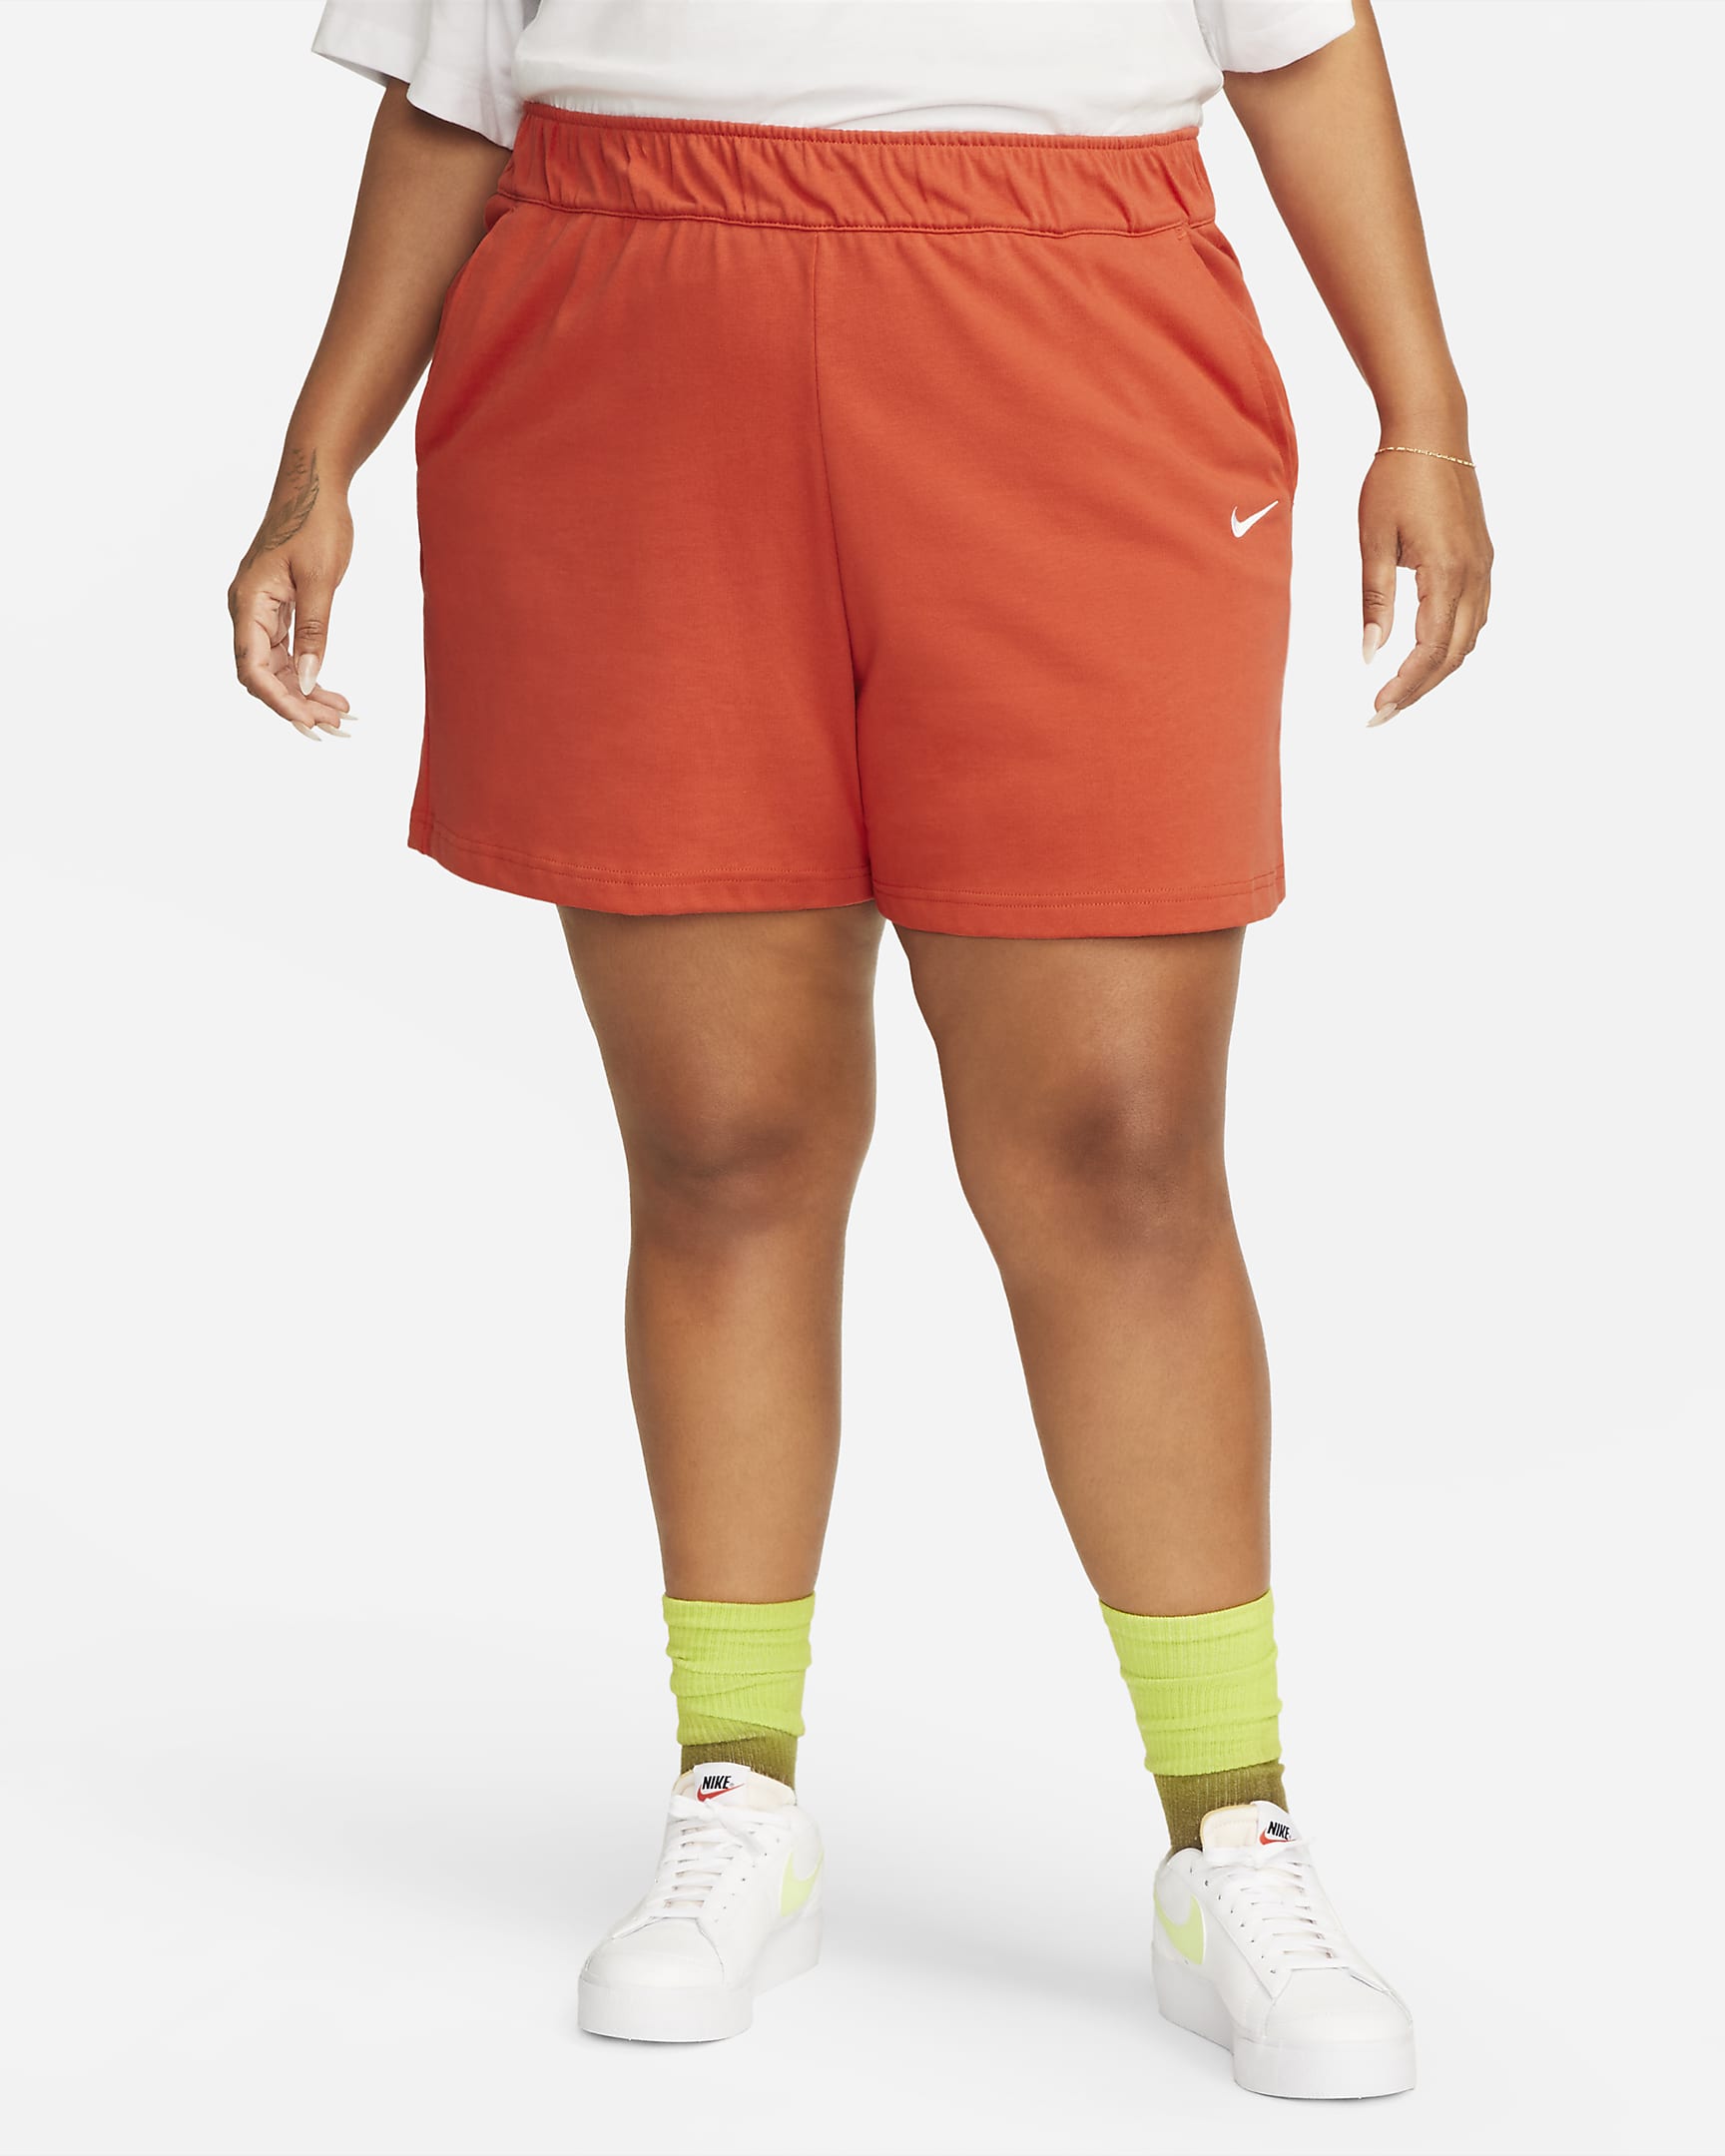 Nike Sportswear Womens Jersey Shorts Plus Size